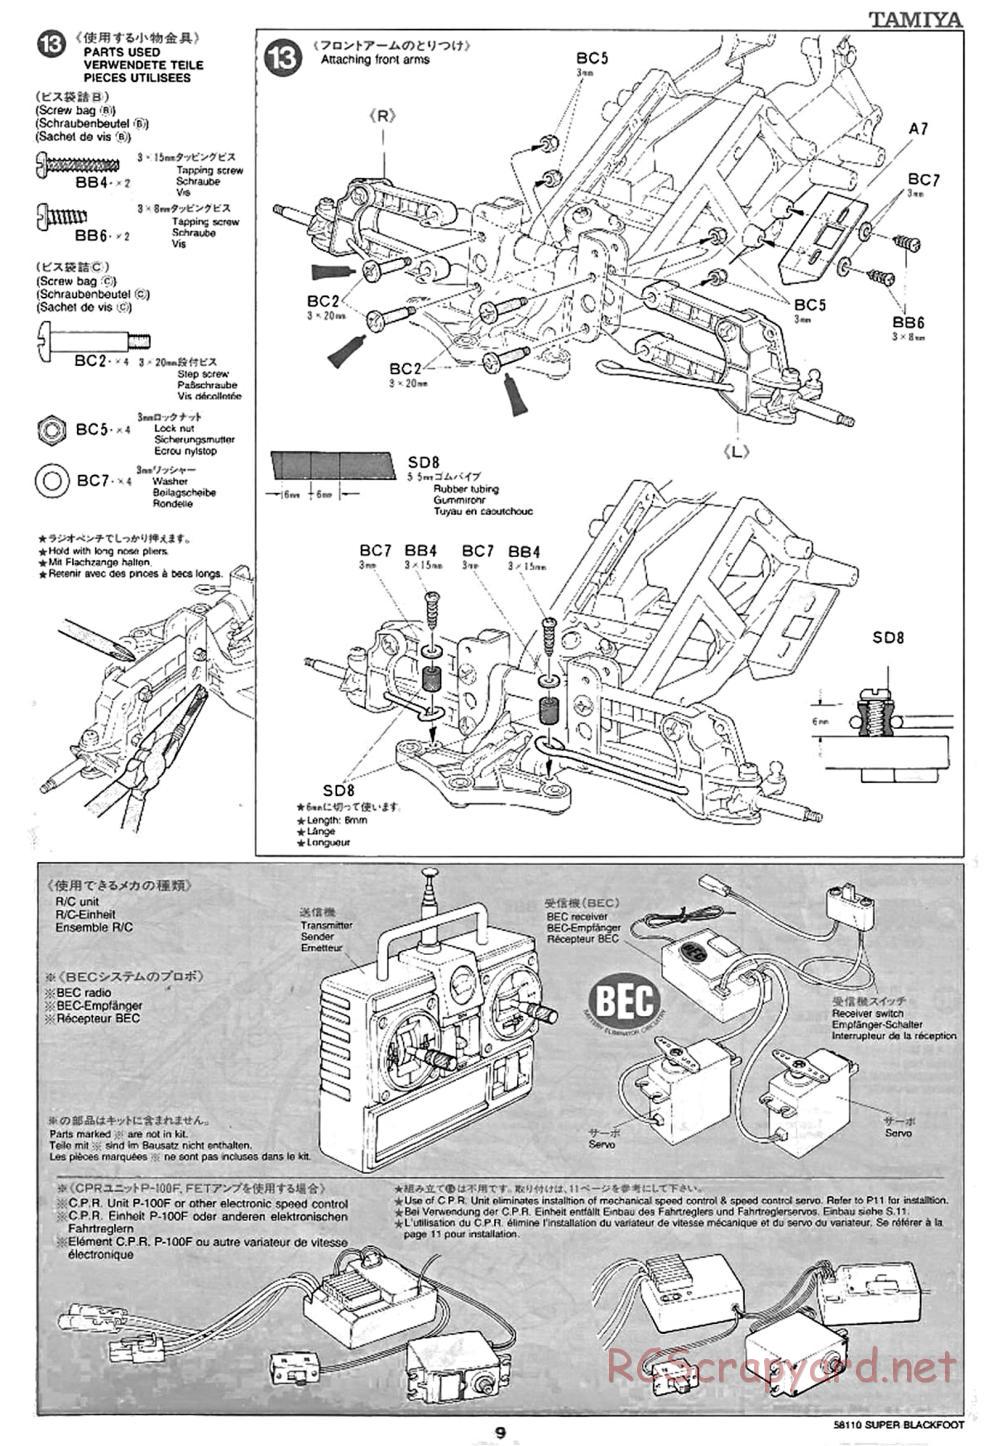 Tamiya - Super Blackfoot Chassis - Manual - Page 9